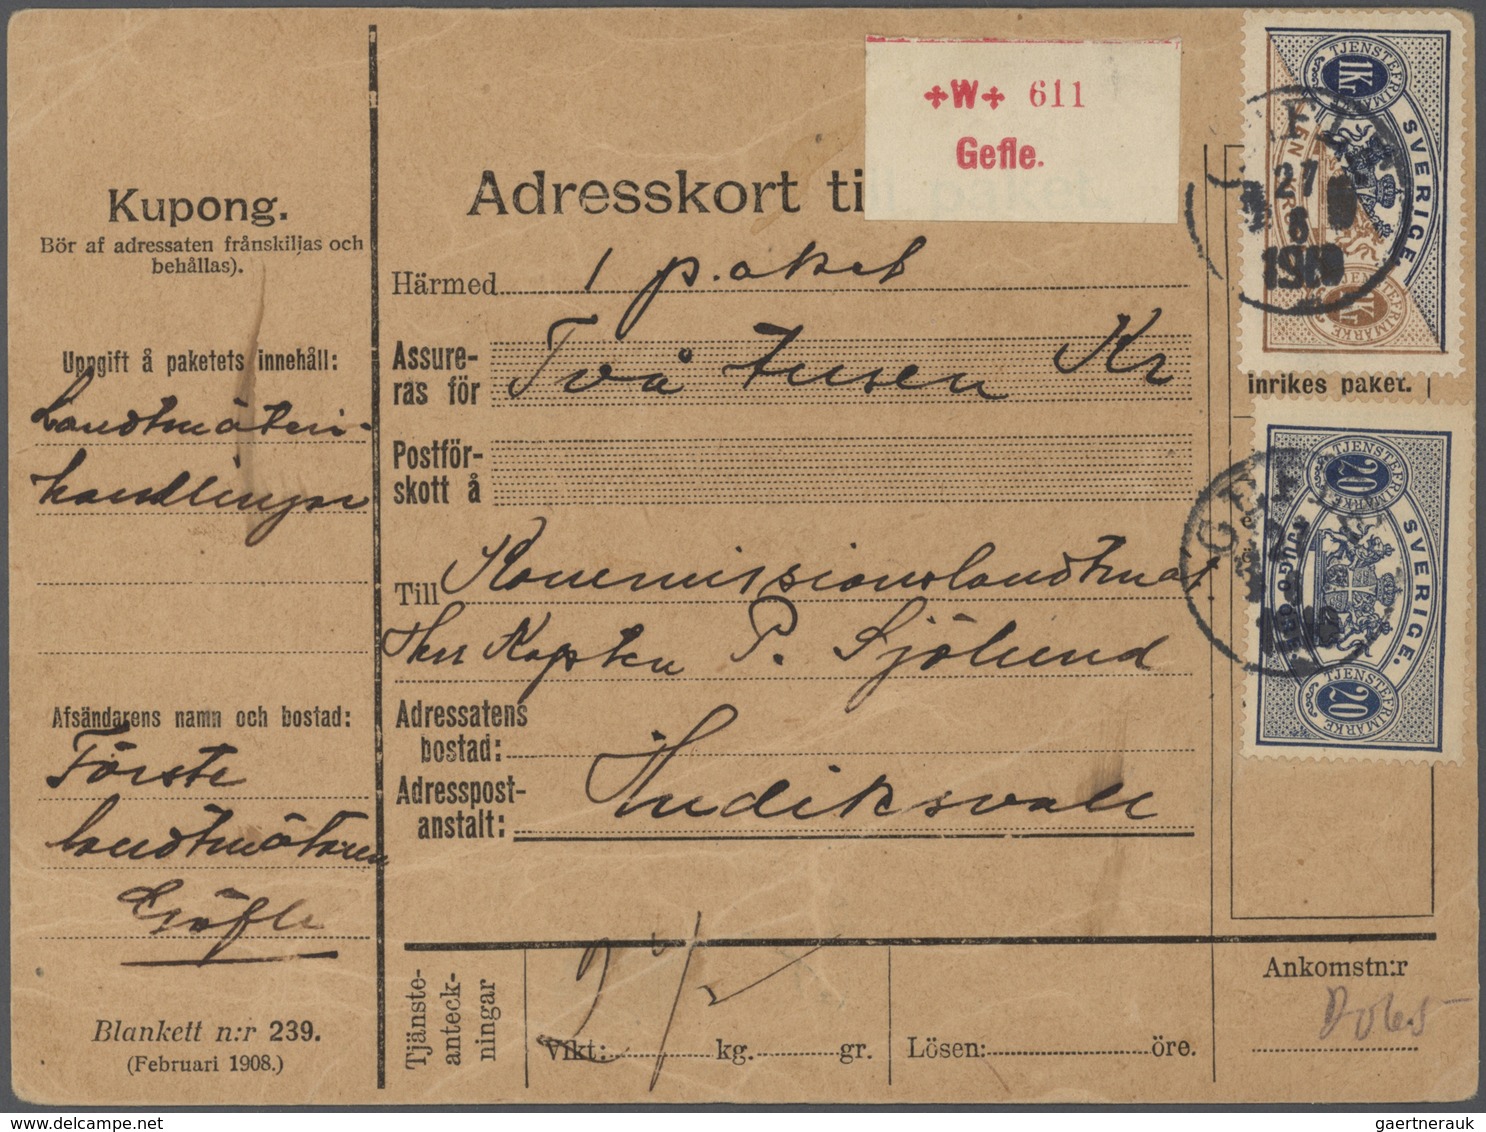 Schweden: 1850/1960 (ca) ungefähr 460 Belege - größtenteils Bedarf, viele Briefe, Formulare, ... ab